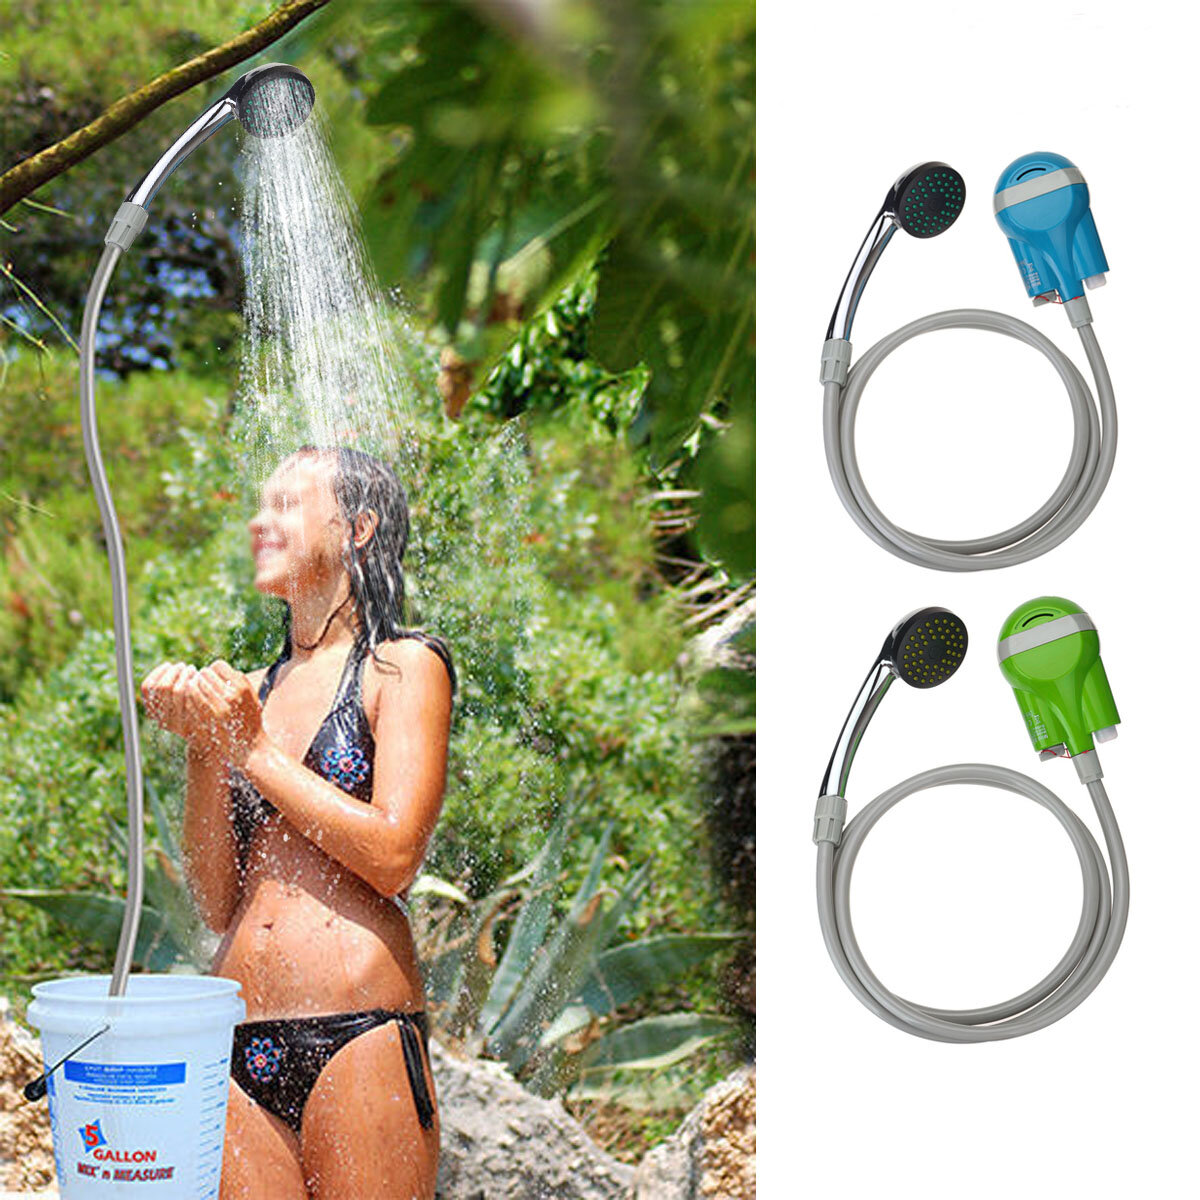 IPRee® Pompe à eau de douche portable Buse rechargeable USB Robinet de douche Spary à main Robinet de douche Camping Caravane Voyage Kit d'extérieur